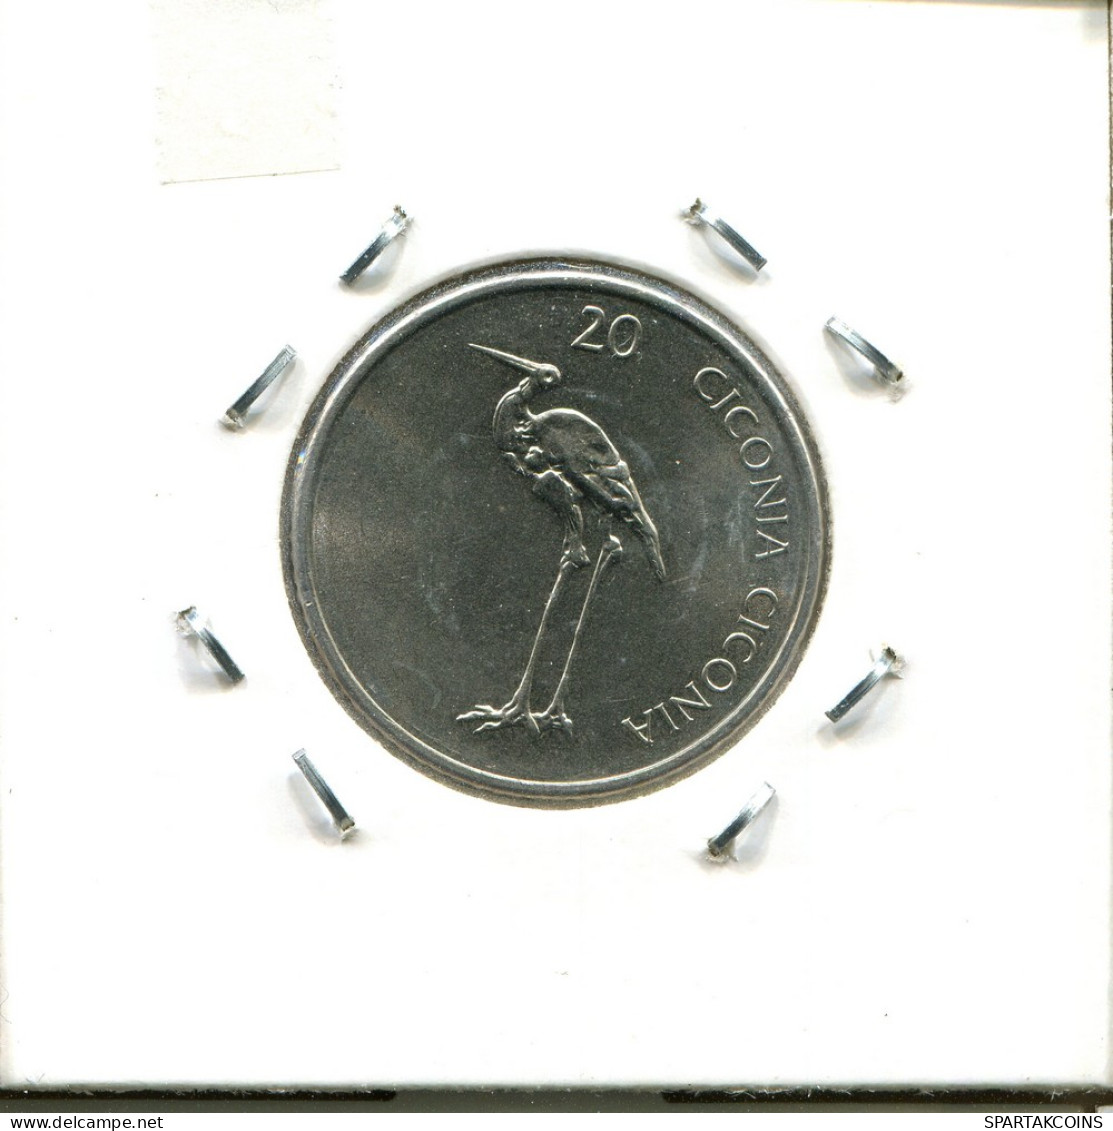 20 TOLARJEV 2004 SLOVENIA Coin #AS573.U - Slovenia